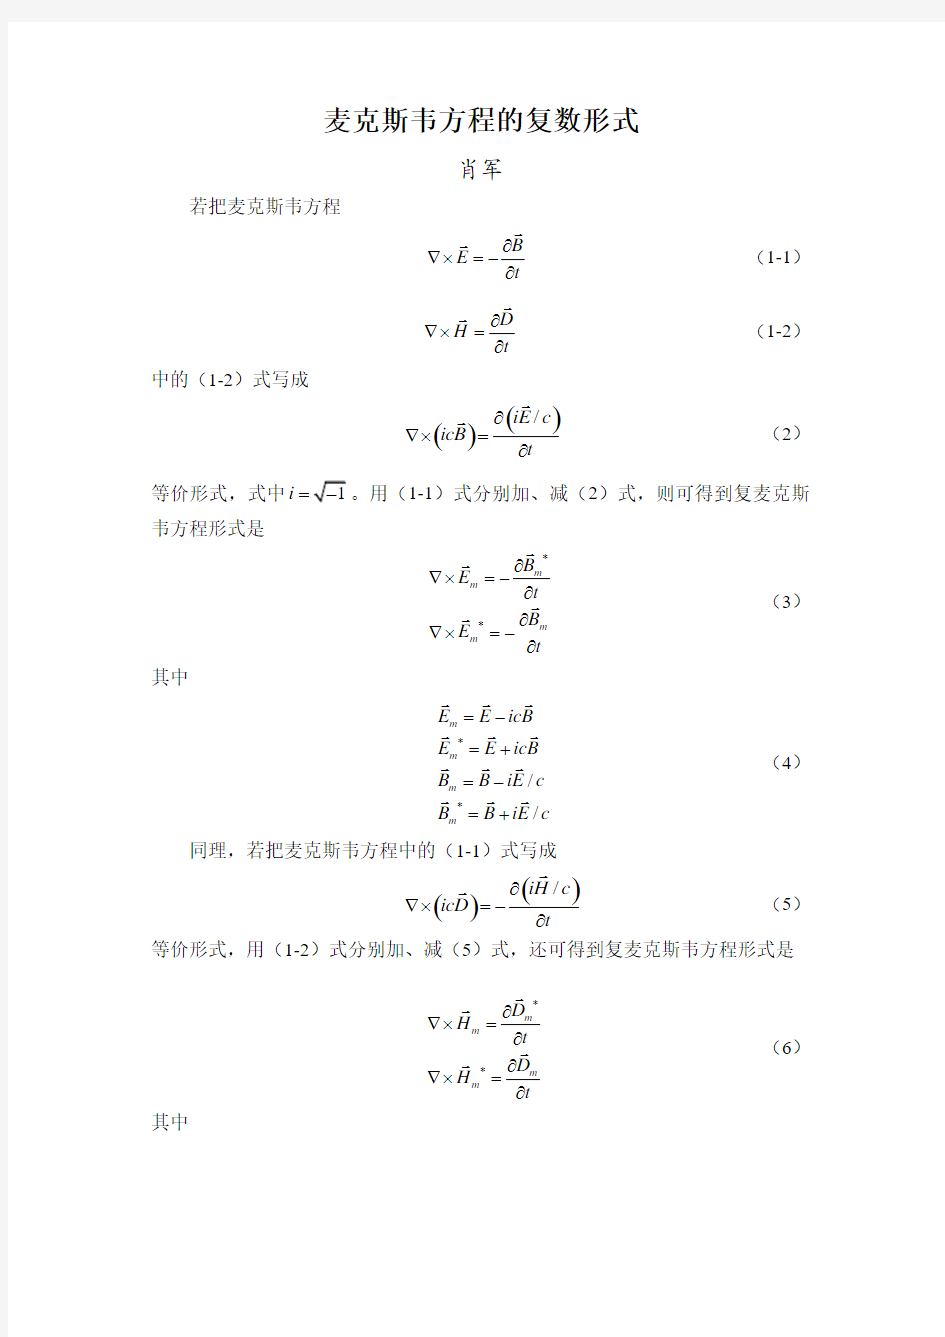 麦克斯韦方程的复数形式